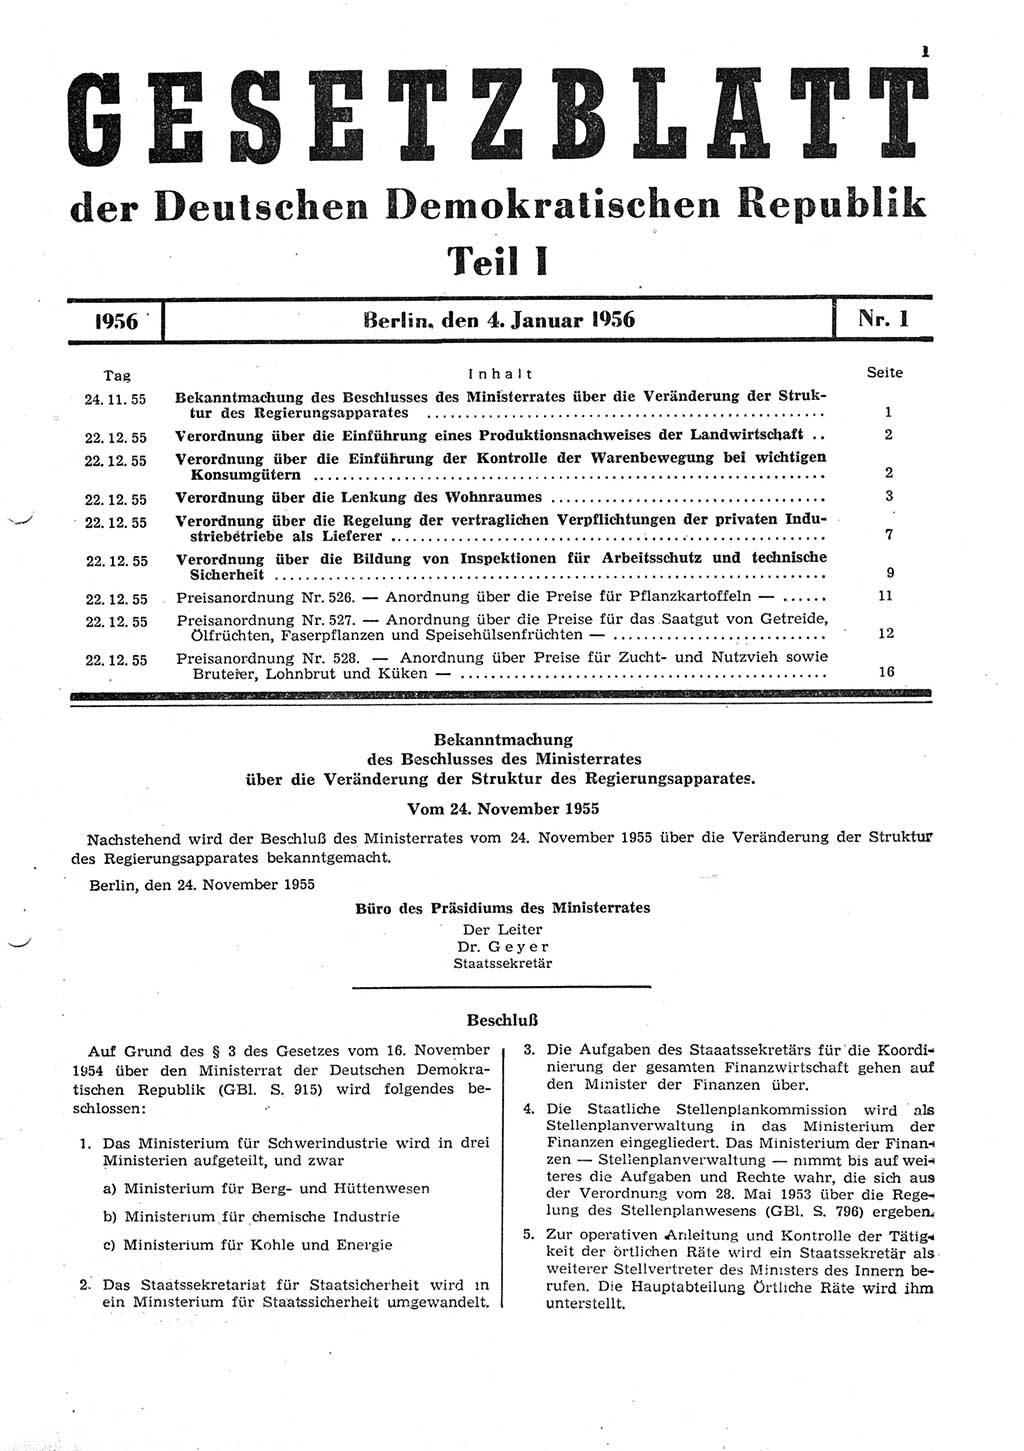 Gesetzblatt (GBl.) der Deutschen Demokratischen Republik (DDR) Teil Ⅰ 1956, Seite 1 (GBl. DDR Ⅰ 1956, S. 1)